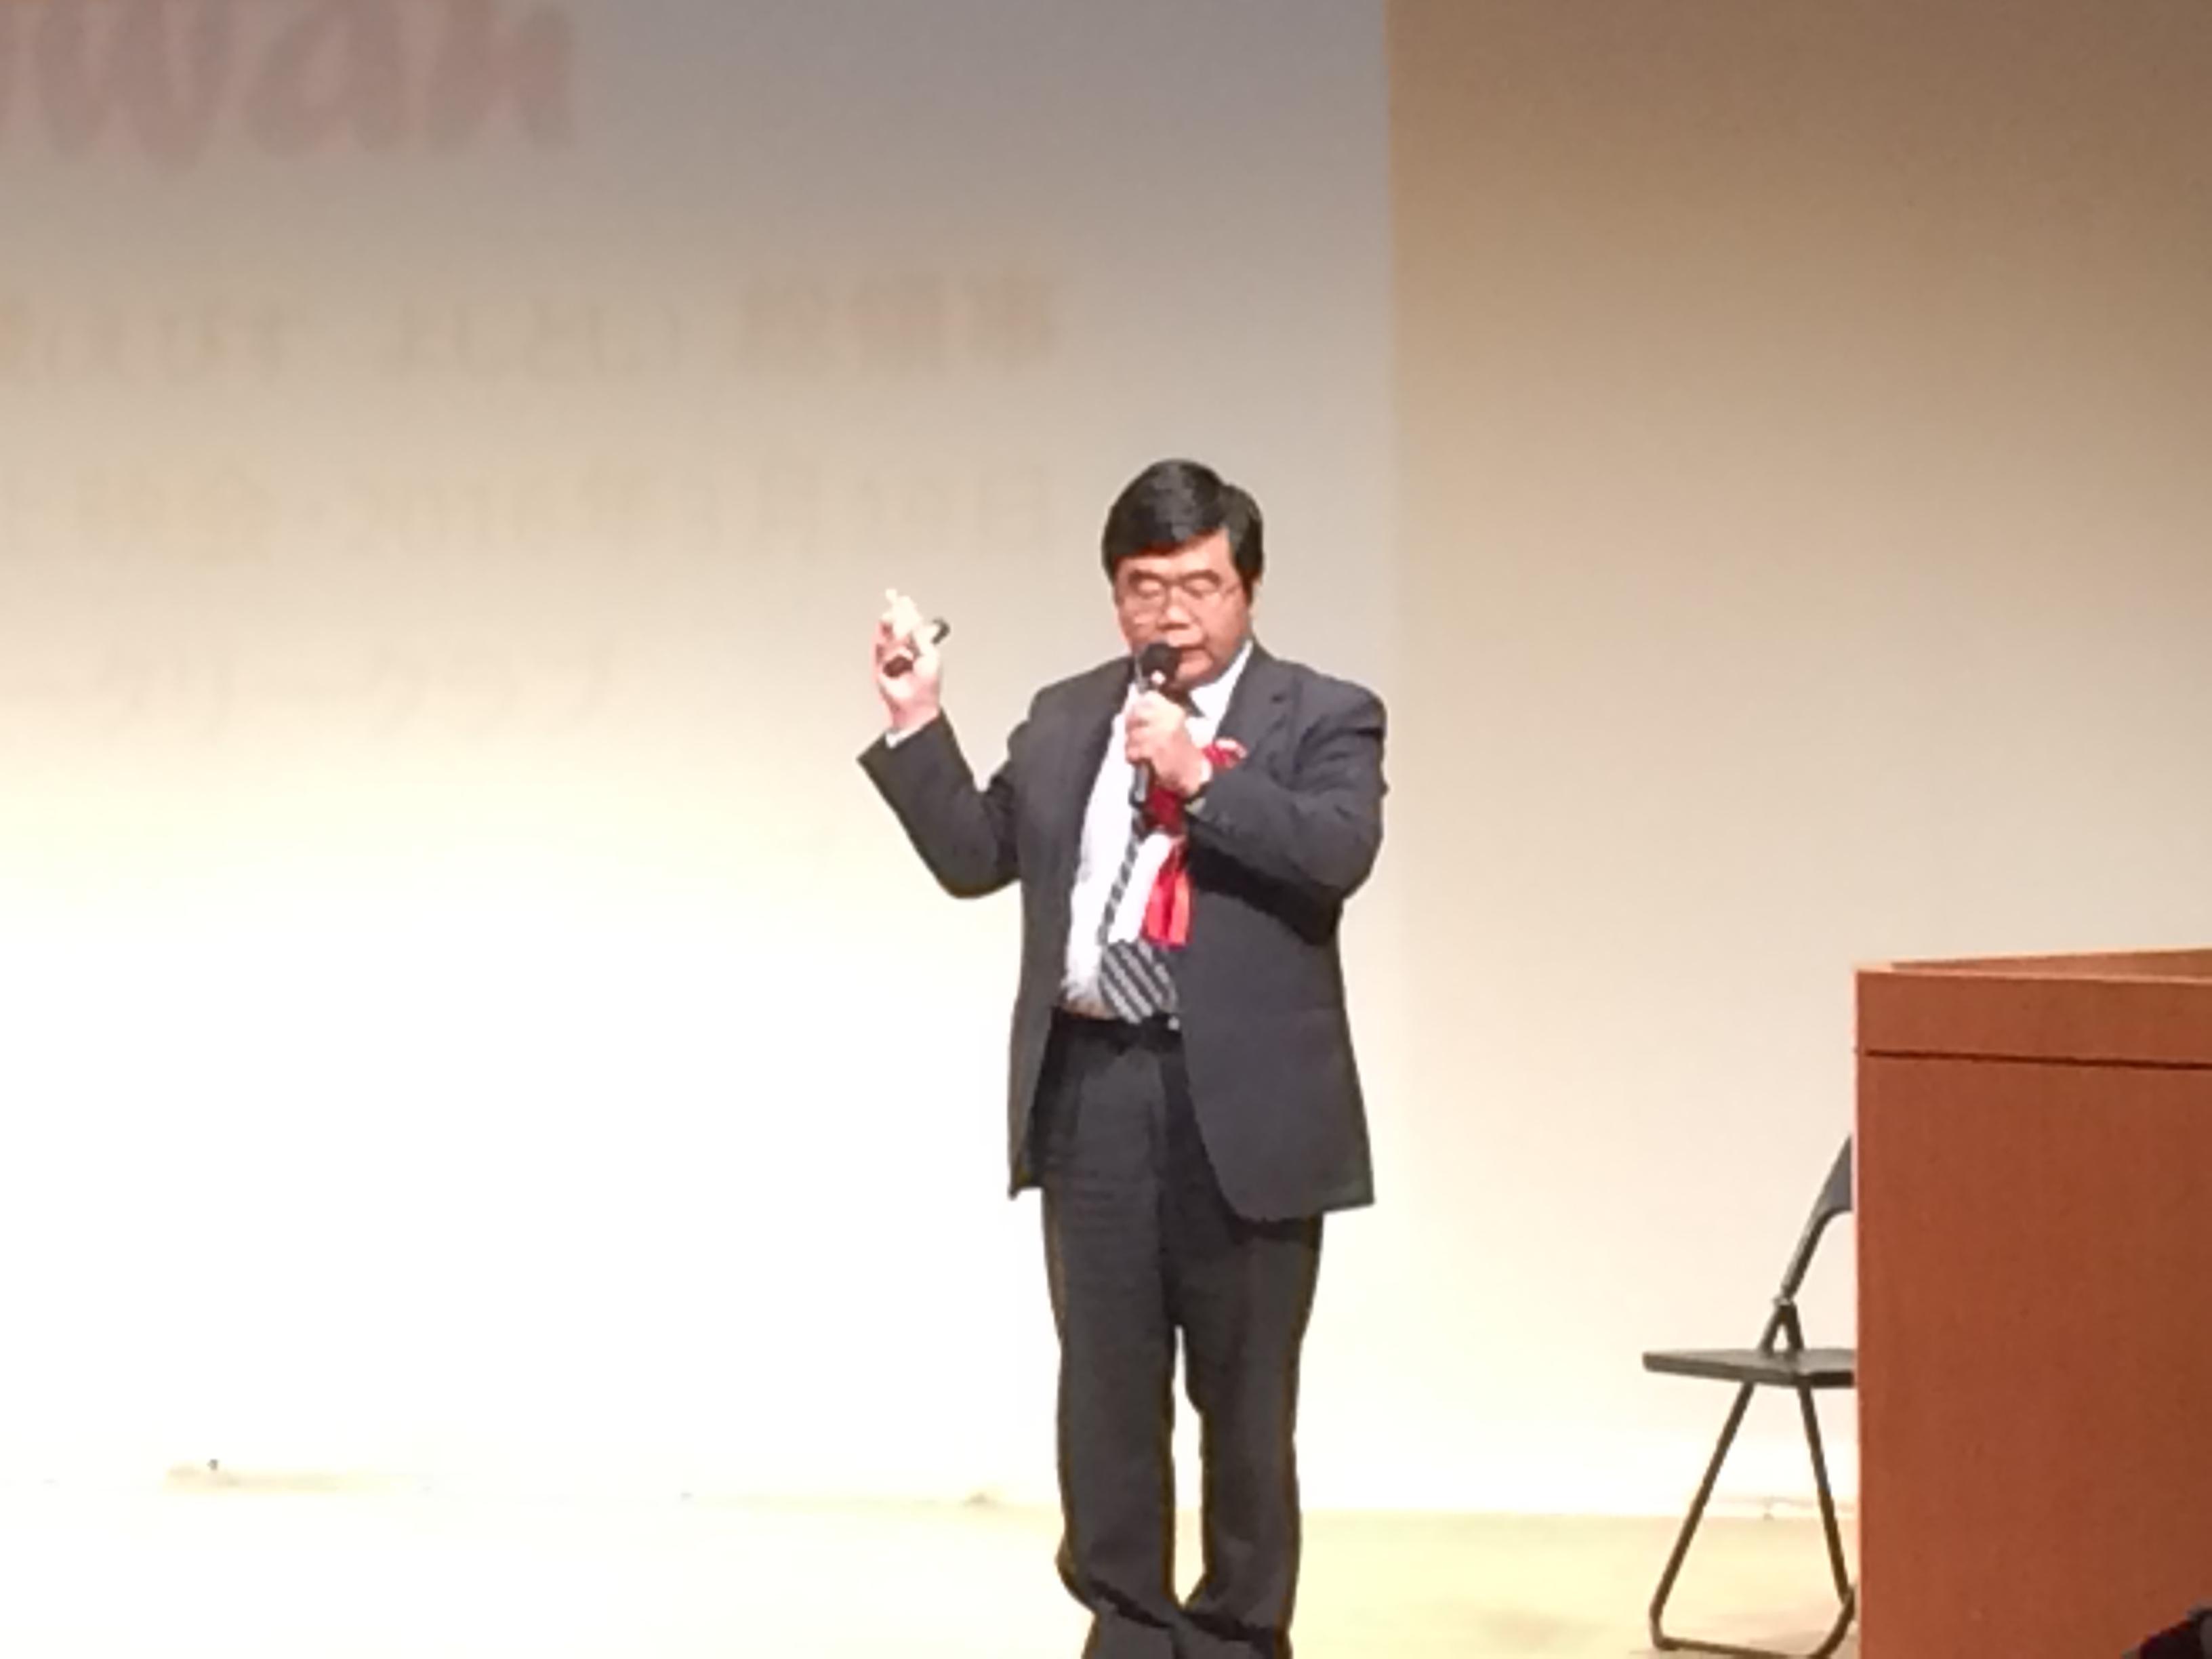 3/19戎総領事が日田ロータリークラブ・日田中央ロータリークラブに「映画『KANO』から見た日台の絆」を題とする講演を行った。